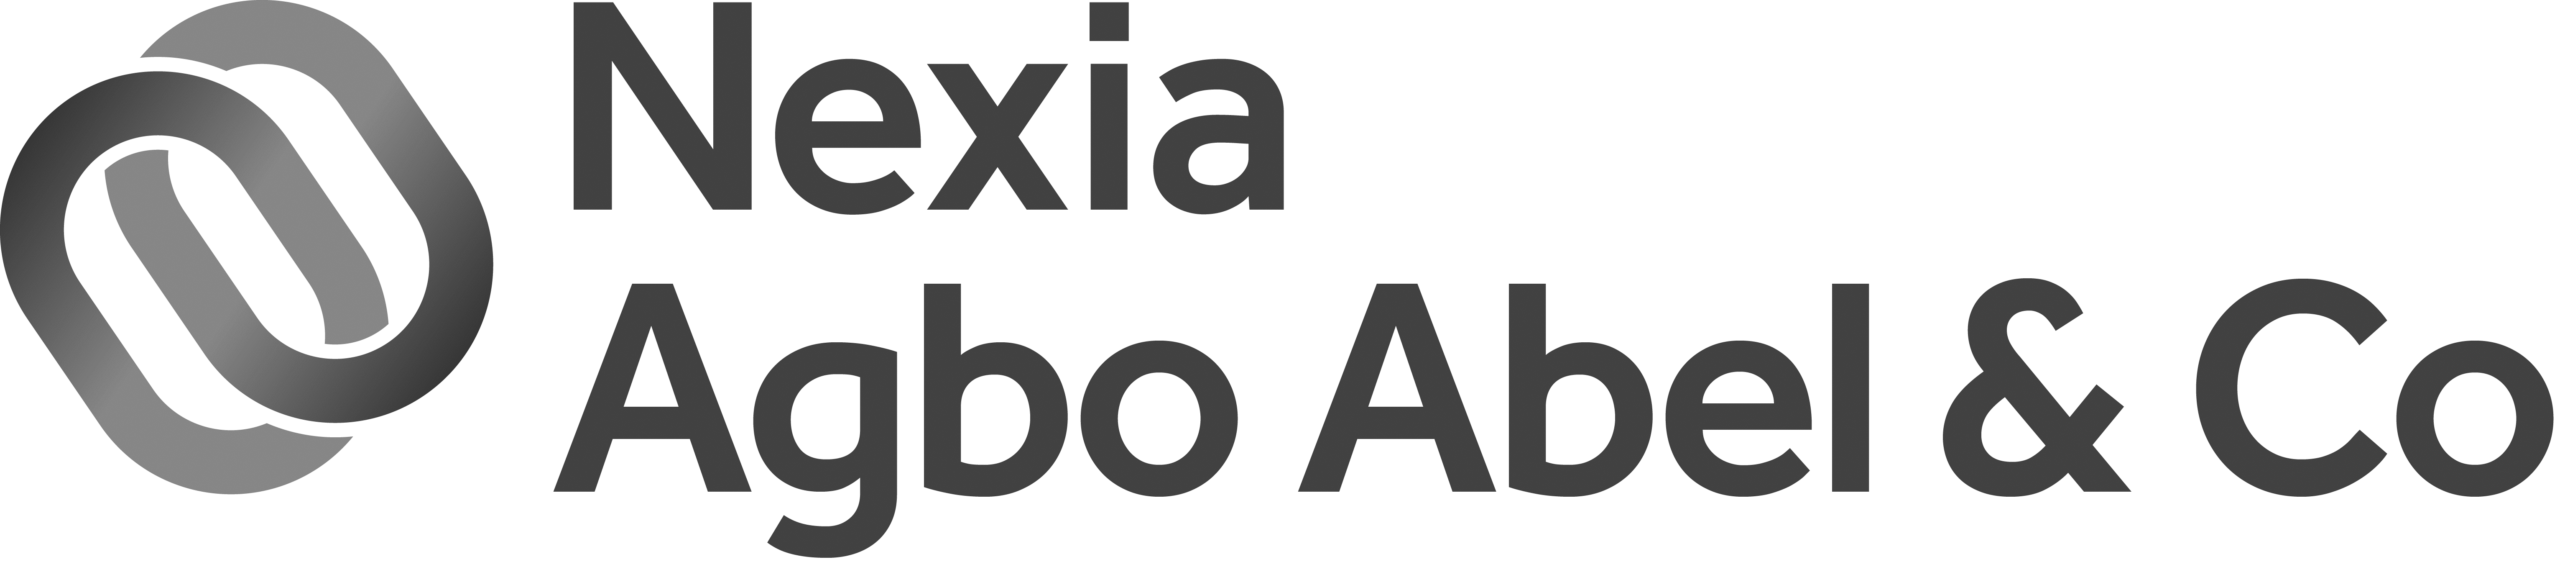 Nexia Agbo Abel & Co Logo